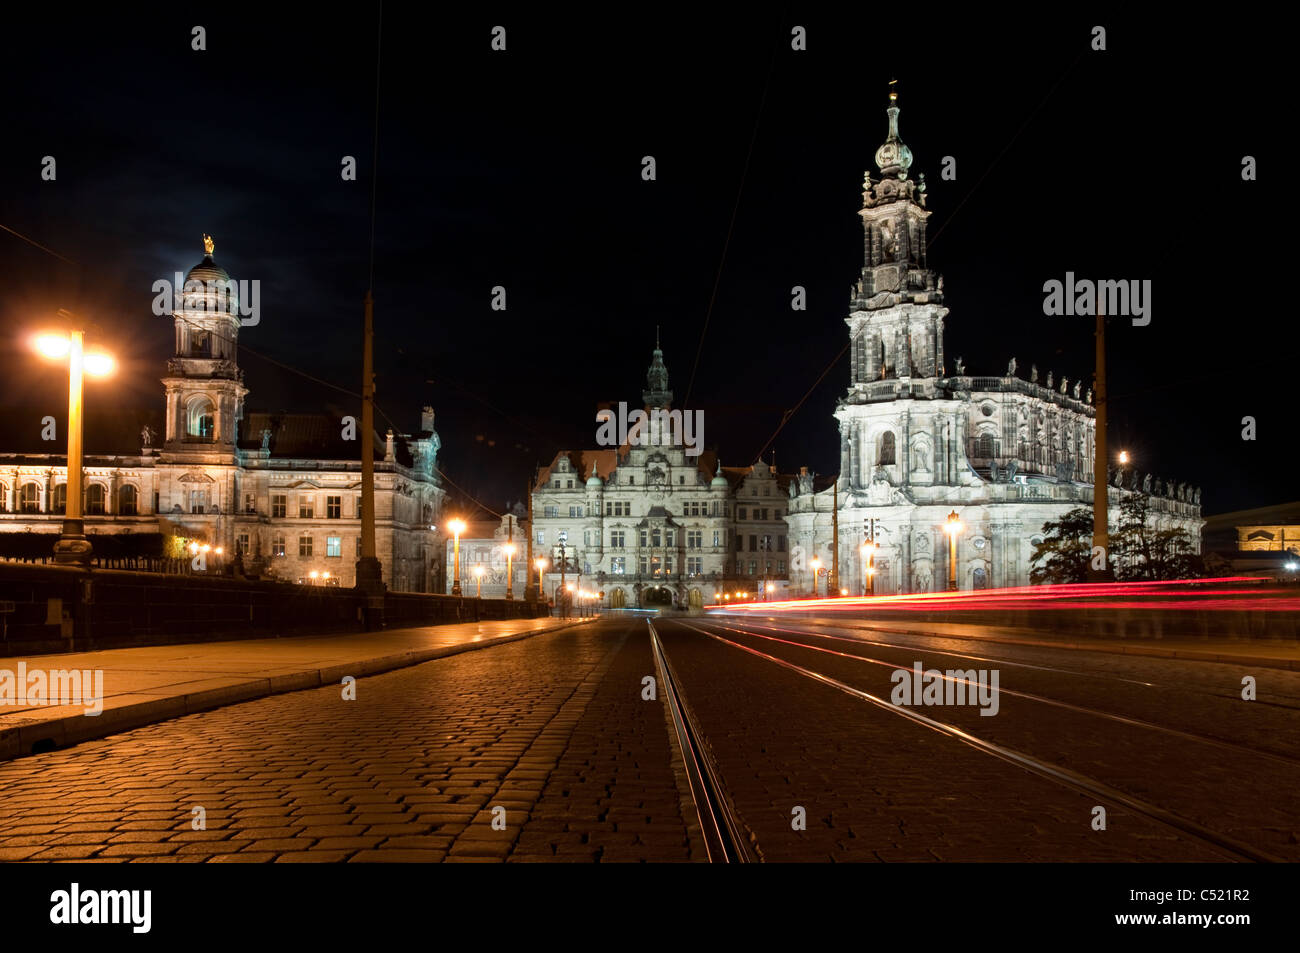 Cathédrale St Trinitatis, palais de la ville et bâtiment de nuit, Ständehaus, Dresde, Saxe, Allemagne, Europe Banque D'Images